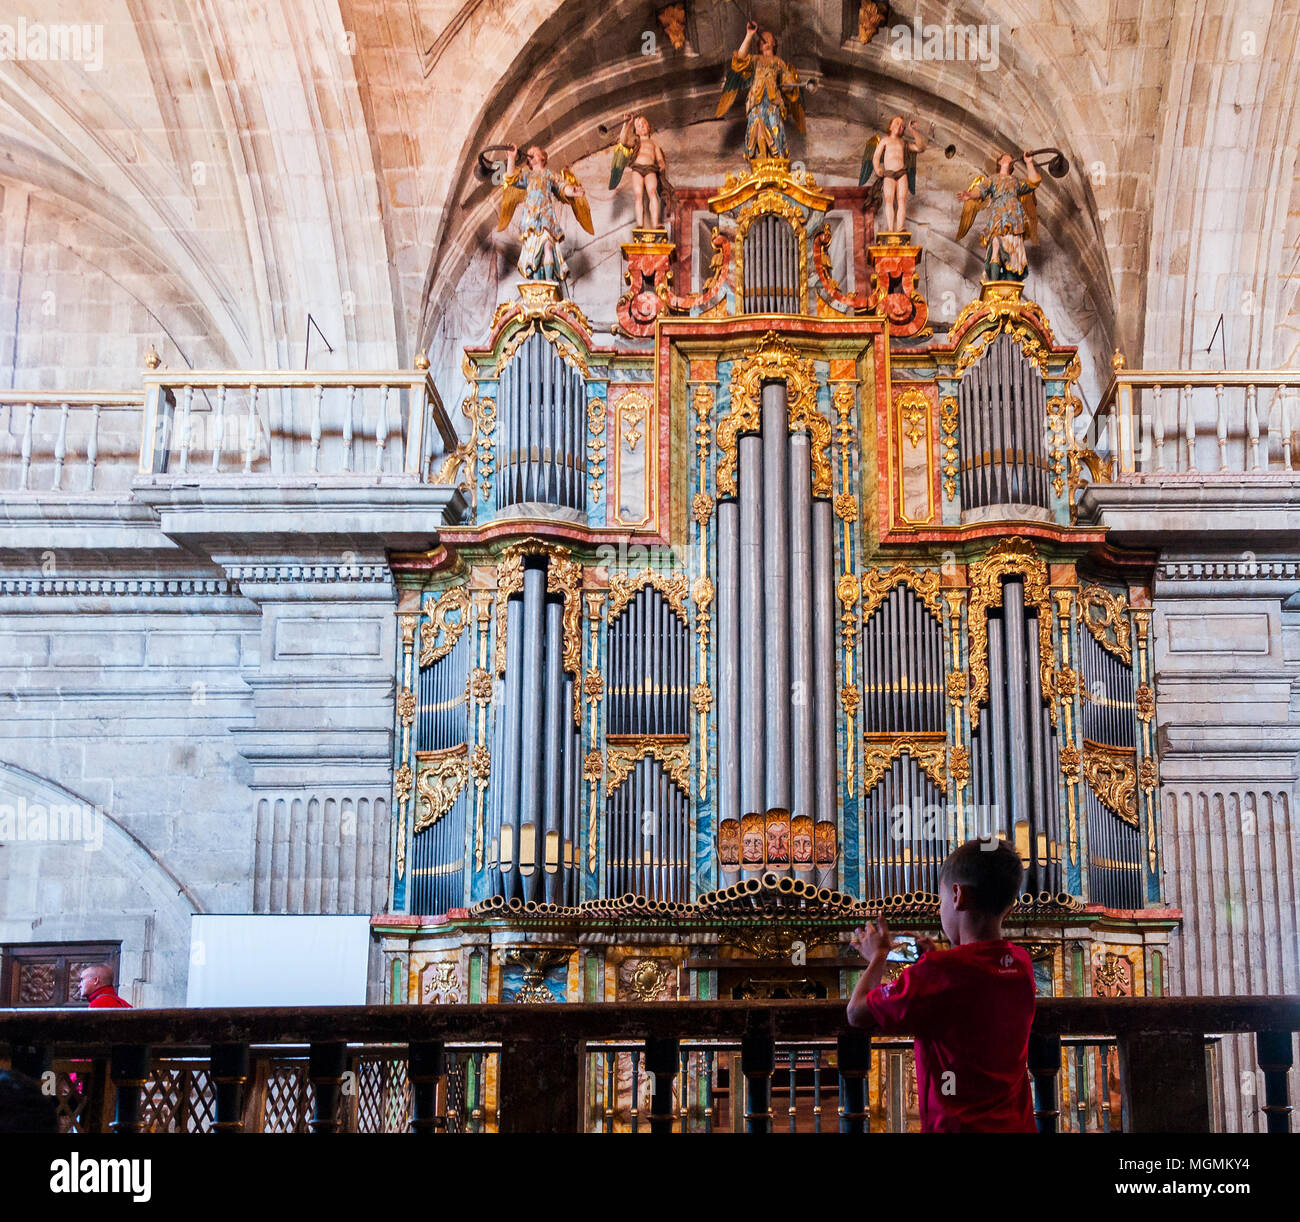 Órgano del Monasterio de San Salvador. Celanova. Ourense. Galicia. España Stock Photo